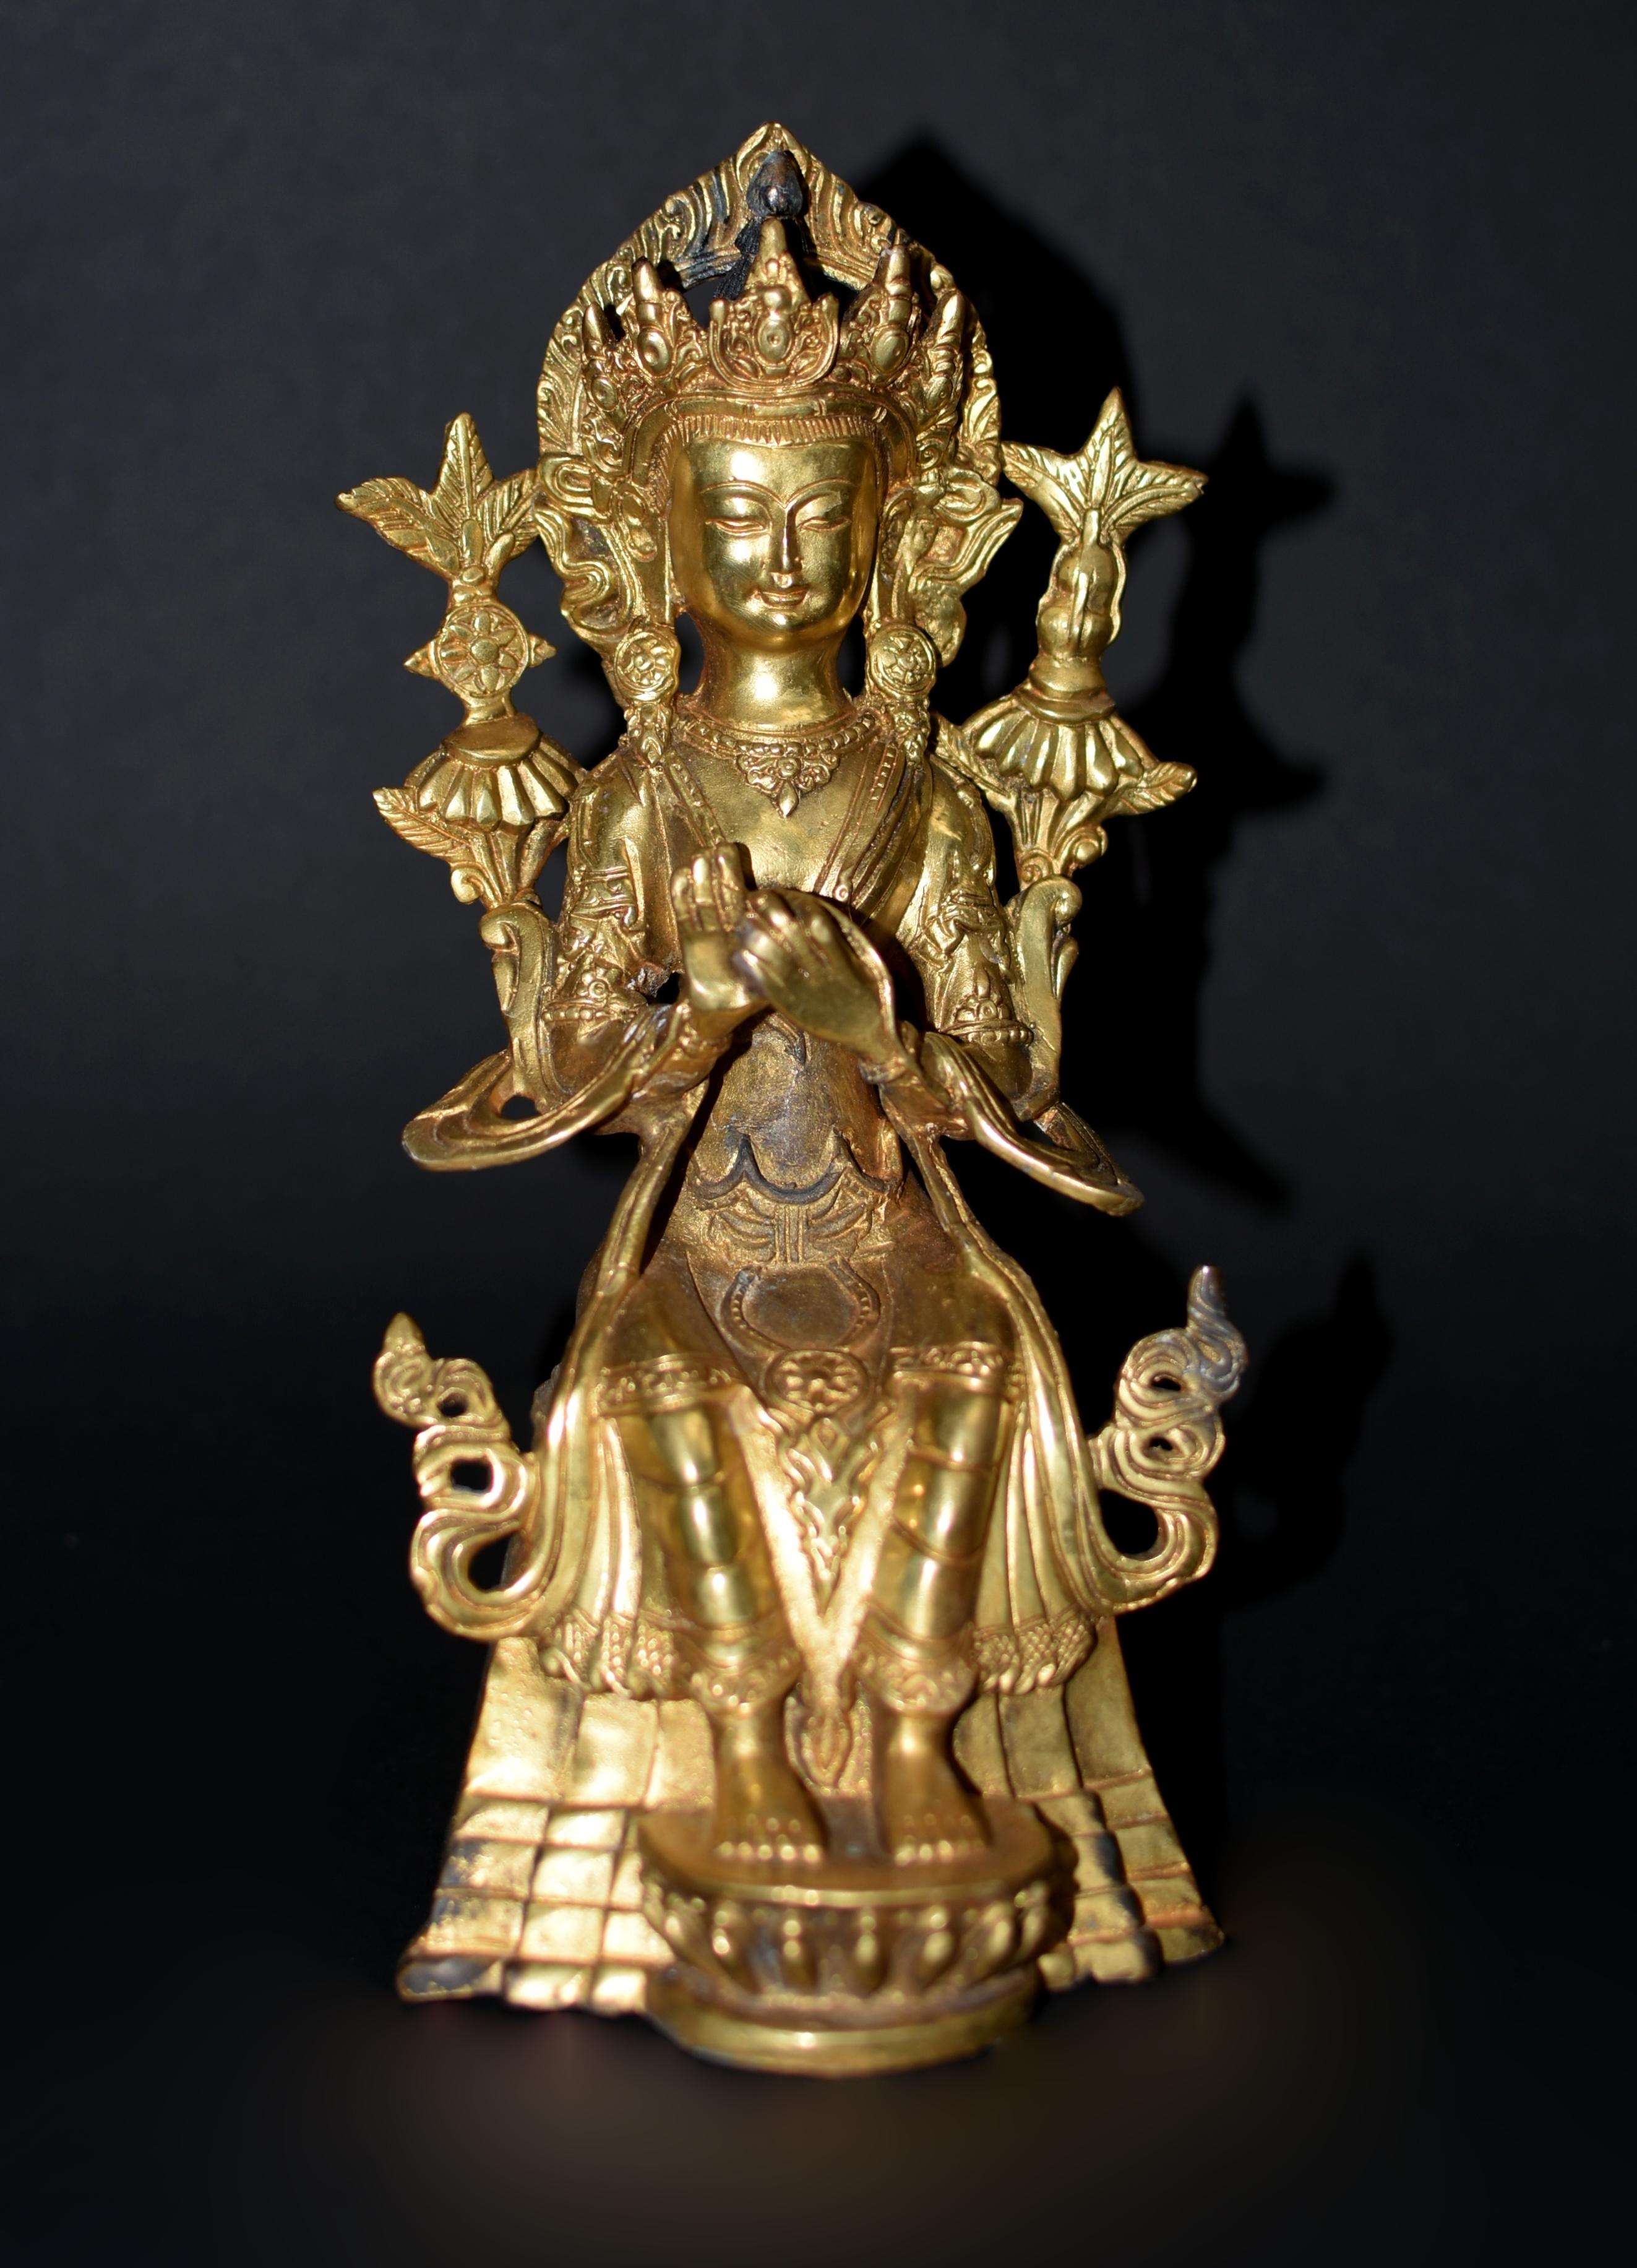 Eine besondere Statue des tibetischen Bodhisattva Maitreya, des zukünftigen Buddhas. Dargestellt auf einem hohen Lotusthron sitzend, mit einer großen verzierten Krone vor einer flammenförmigen Mandola und einem Paar Blumenpfosten, langen Ohrringen,